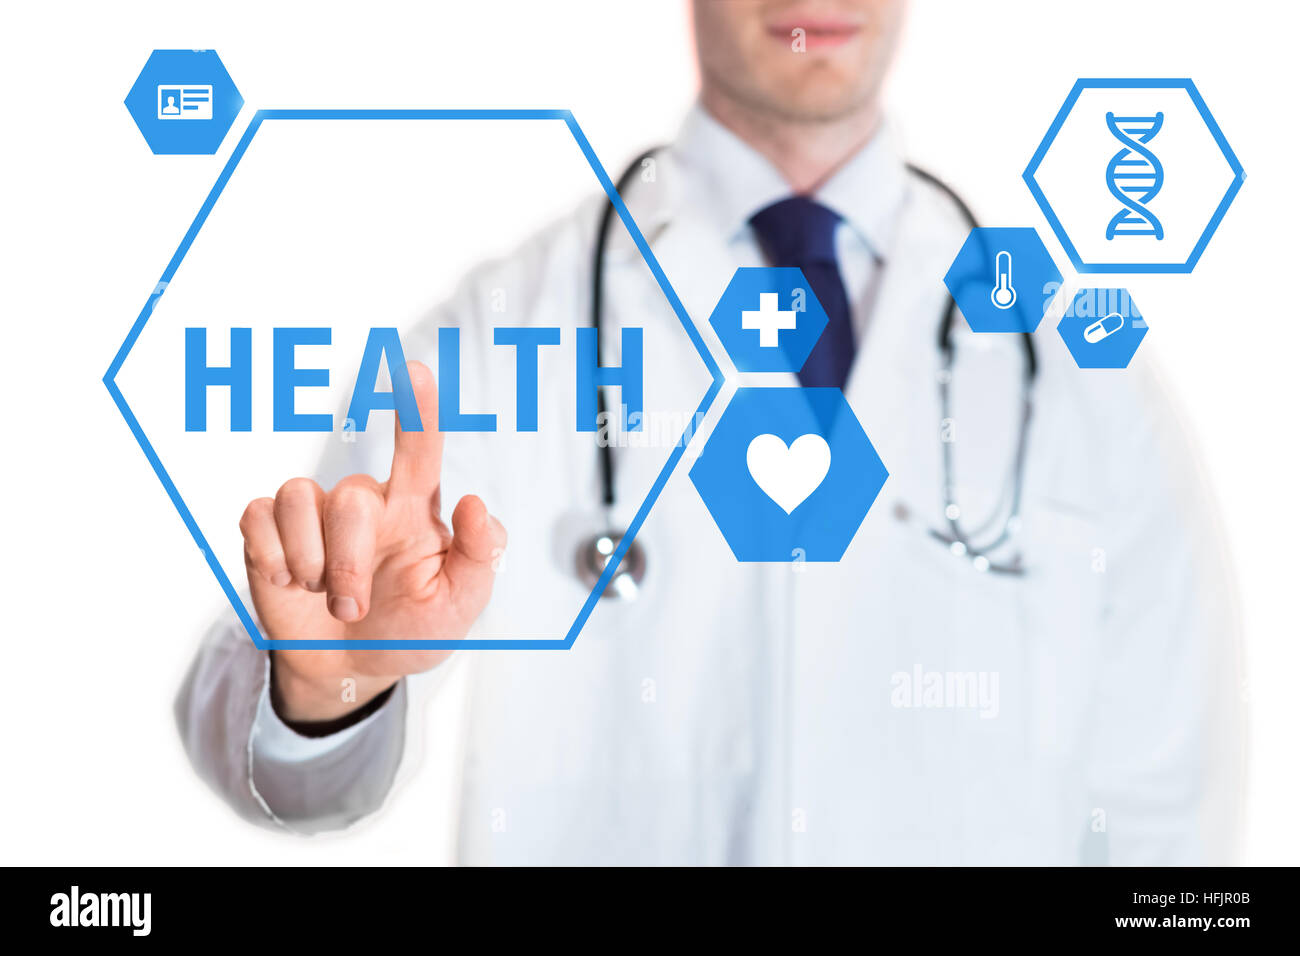 Concepto de salud con médico tocando un botón con el texto y los iconos de salud sobre la interfaz virtual, aislado sobre fondo blanco. Foto de stock